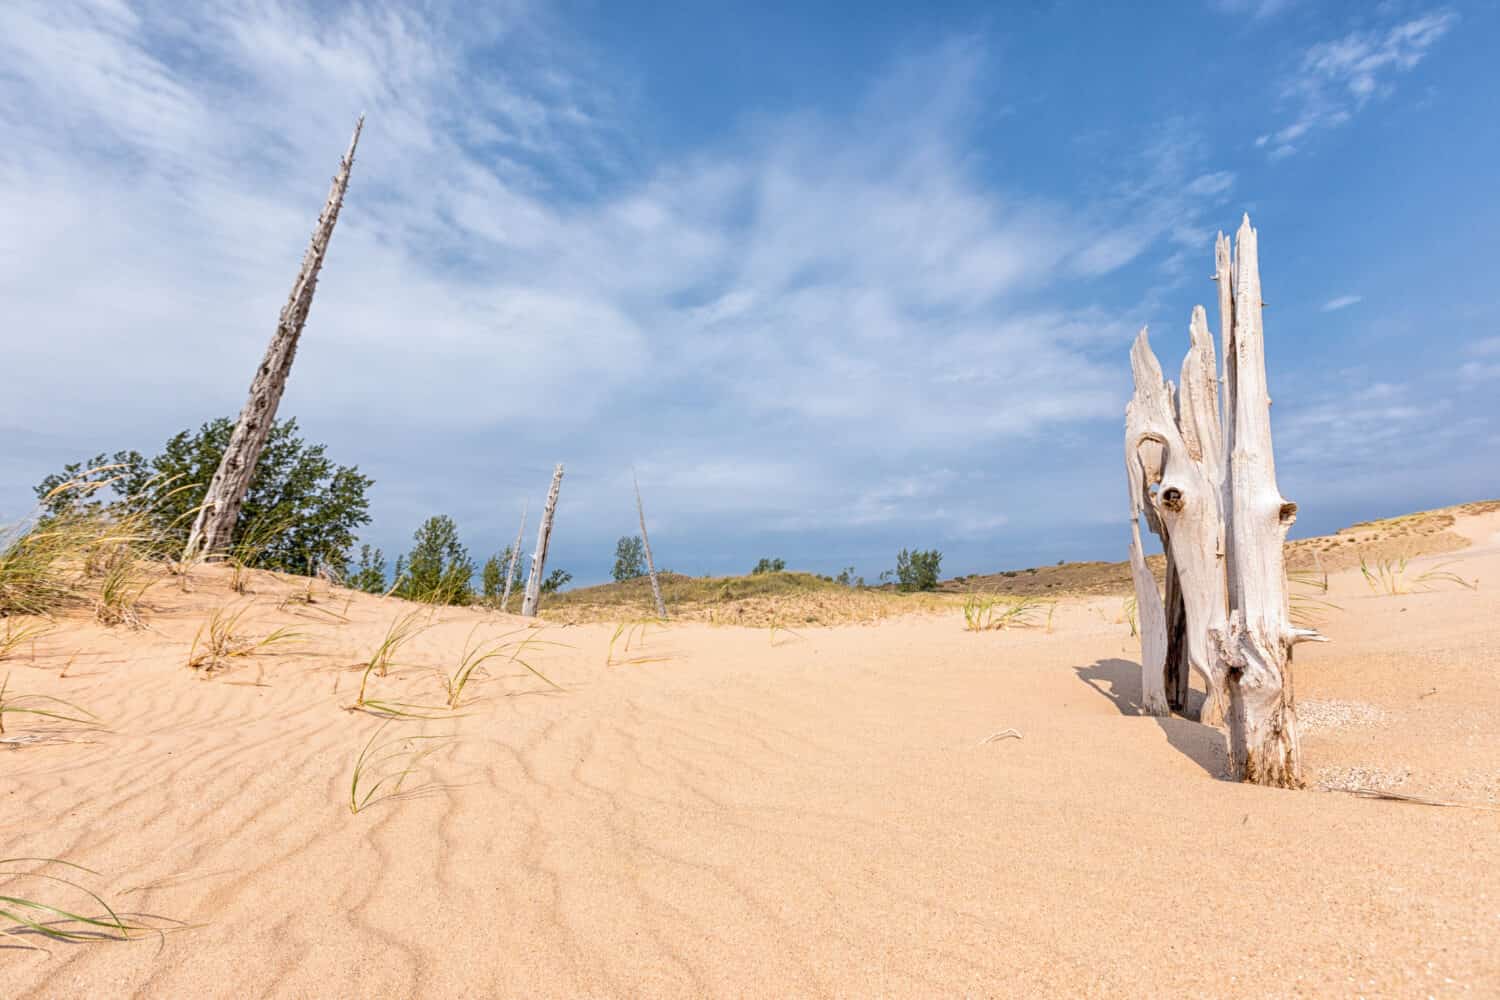 Scheletri di alberi morti si alzano dall'erosione delle dune di sabbia a Sleeping Bear Dunes National Lakeshore.  Un bel cielo blu e nuvole bianche sono sullo sfondo